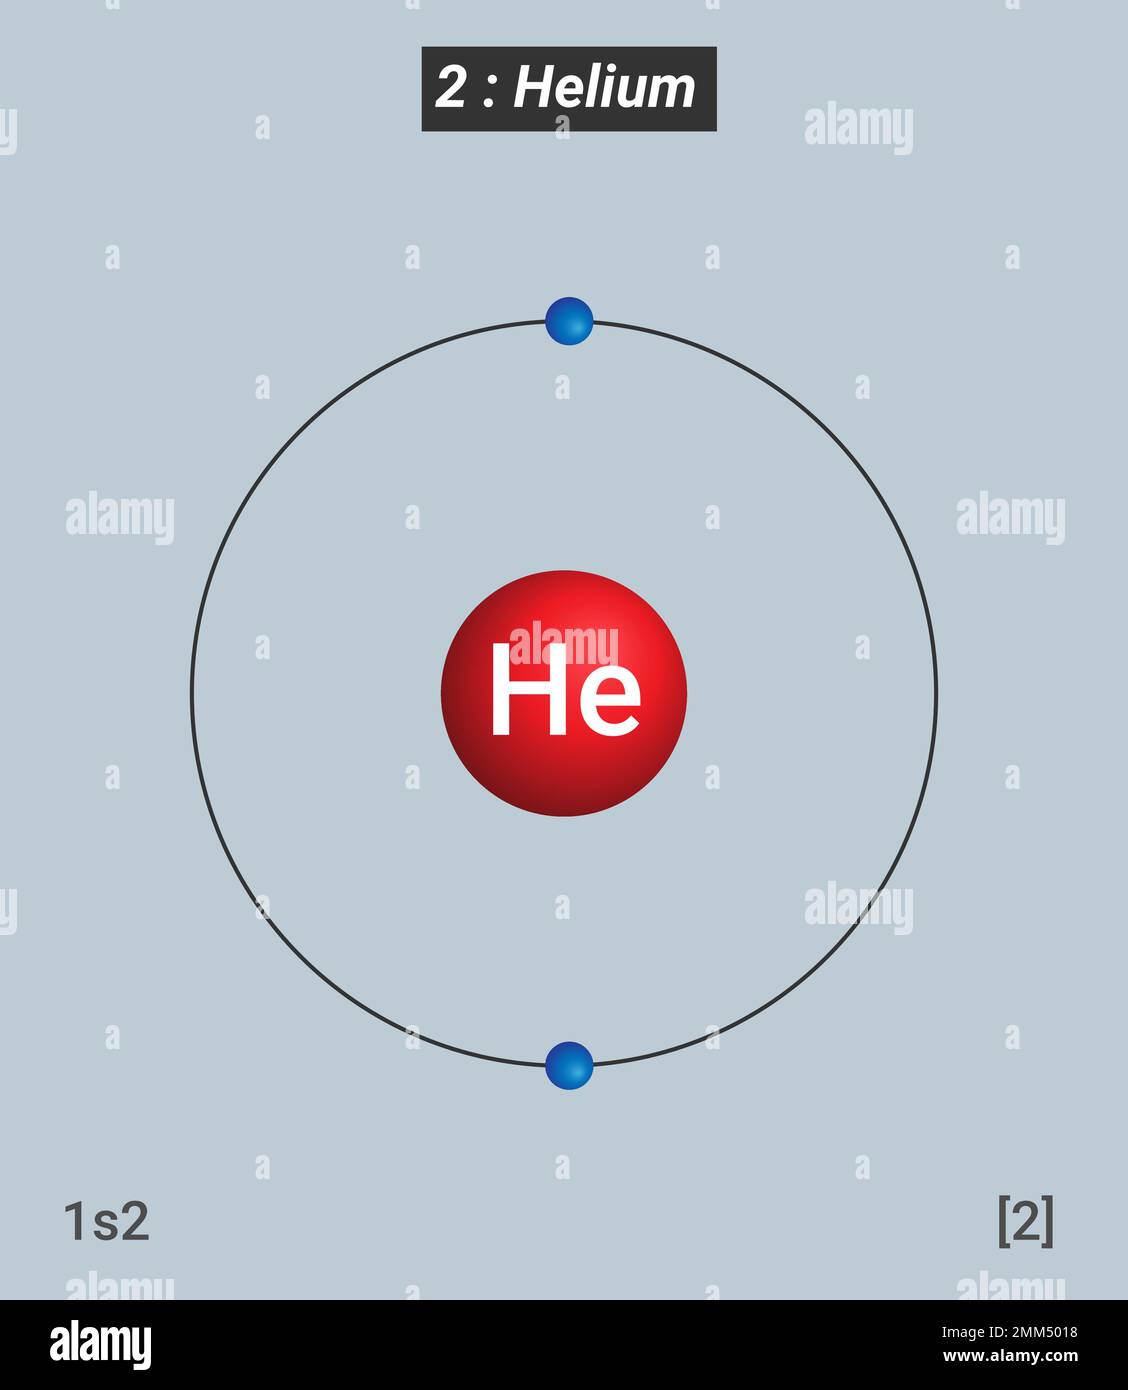 Helium-Elementinformationen - Fakten, Eigenschaften, Trends, Verwendungen und Vergleich Periodische Tabelle der Elemente Stock Vektor